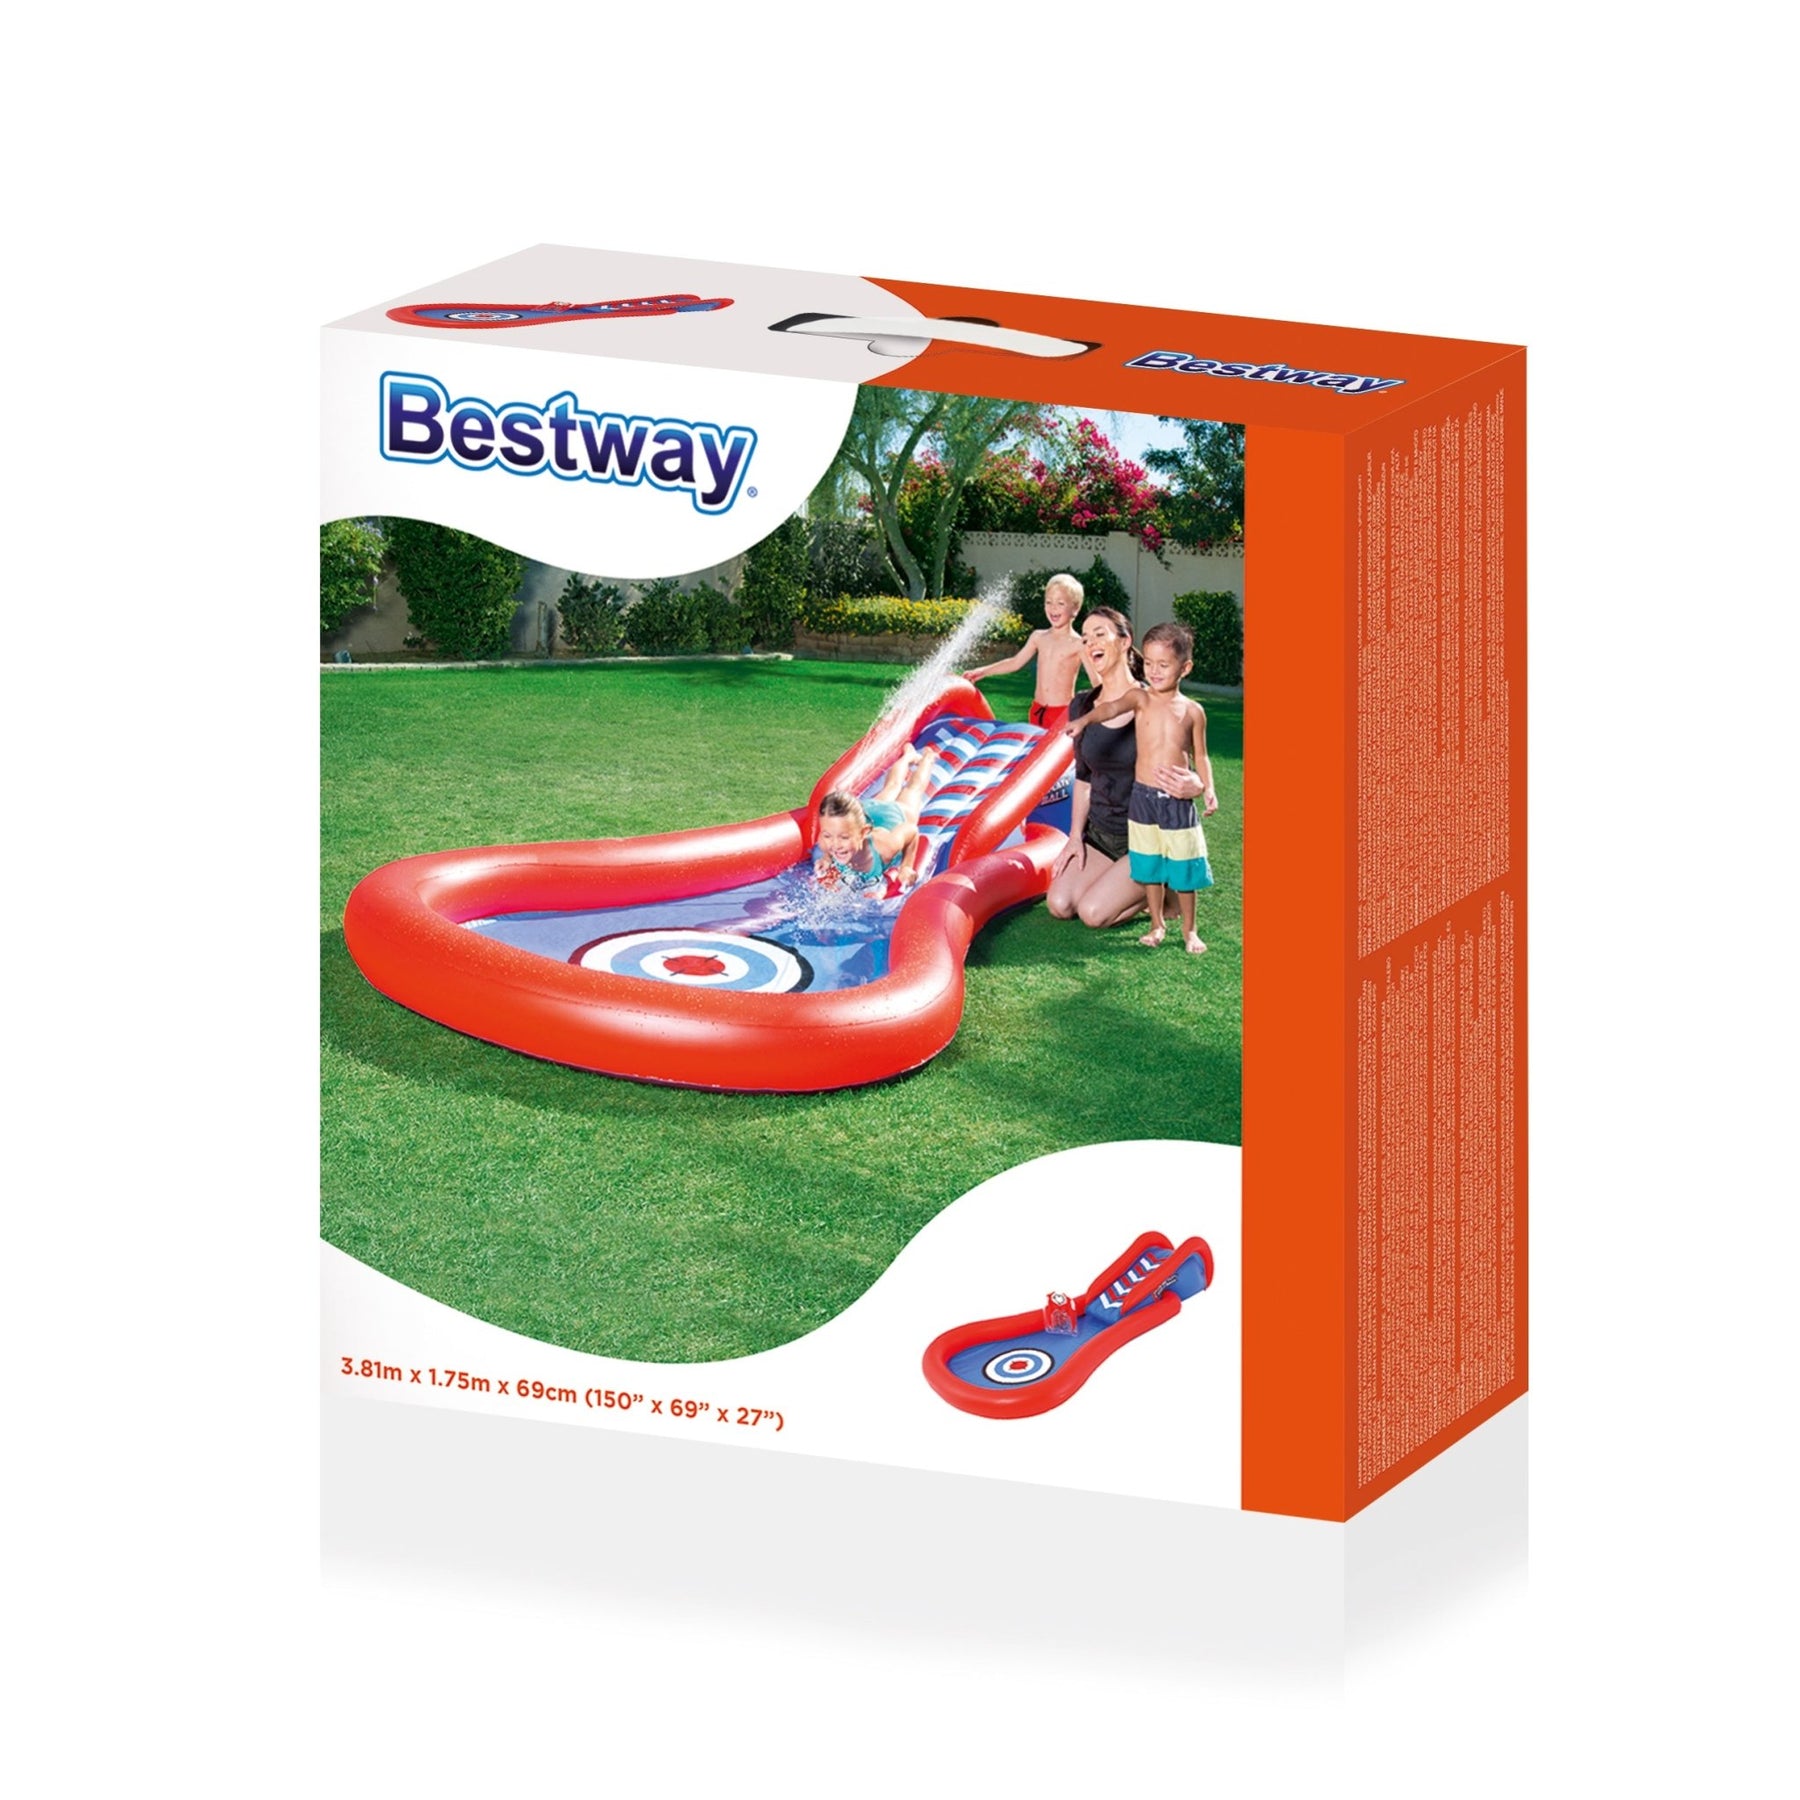 Bestway Wasserrutsche - Splash & Play Canonball 381x175x69cm - Poolpirat